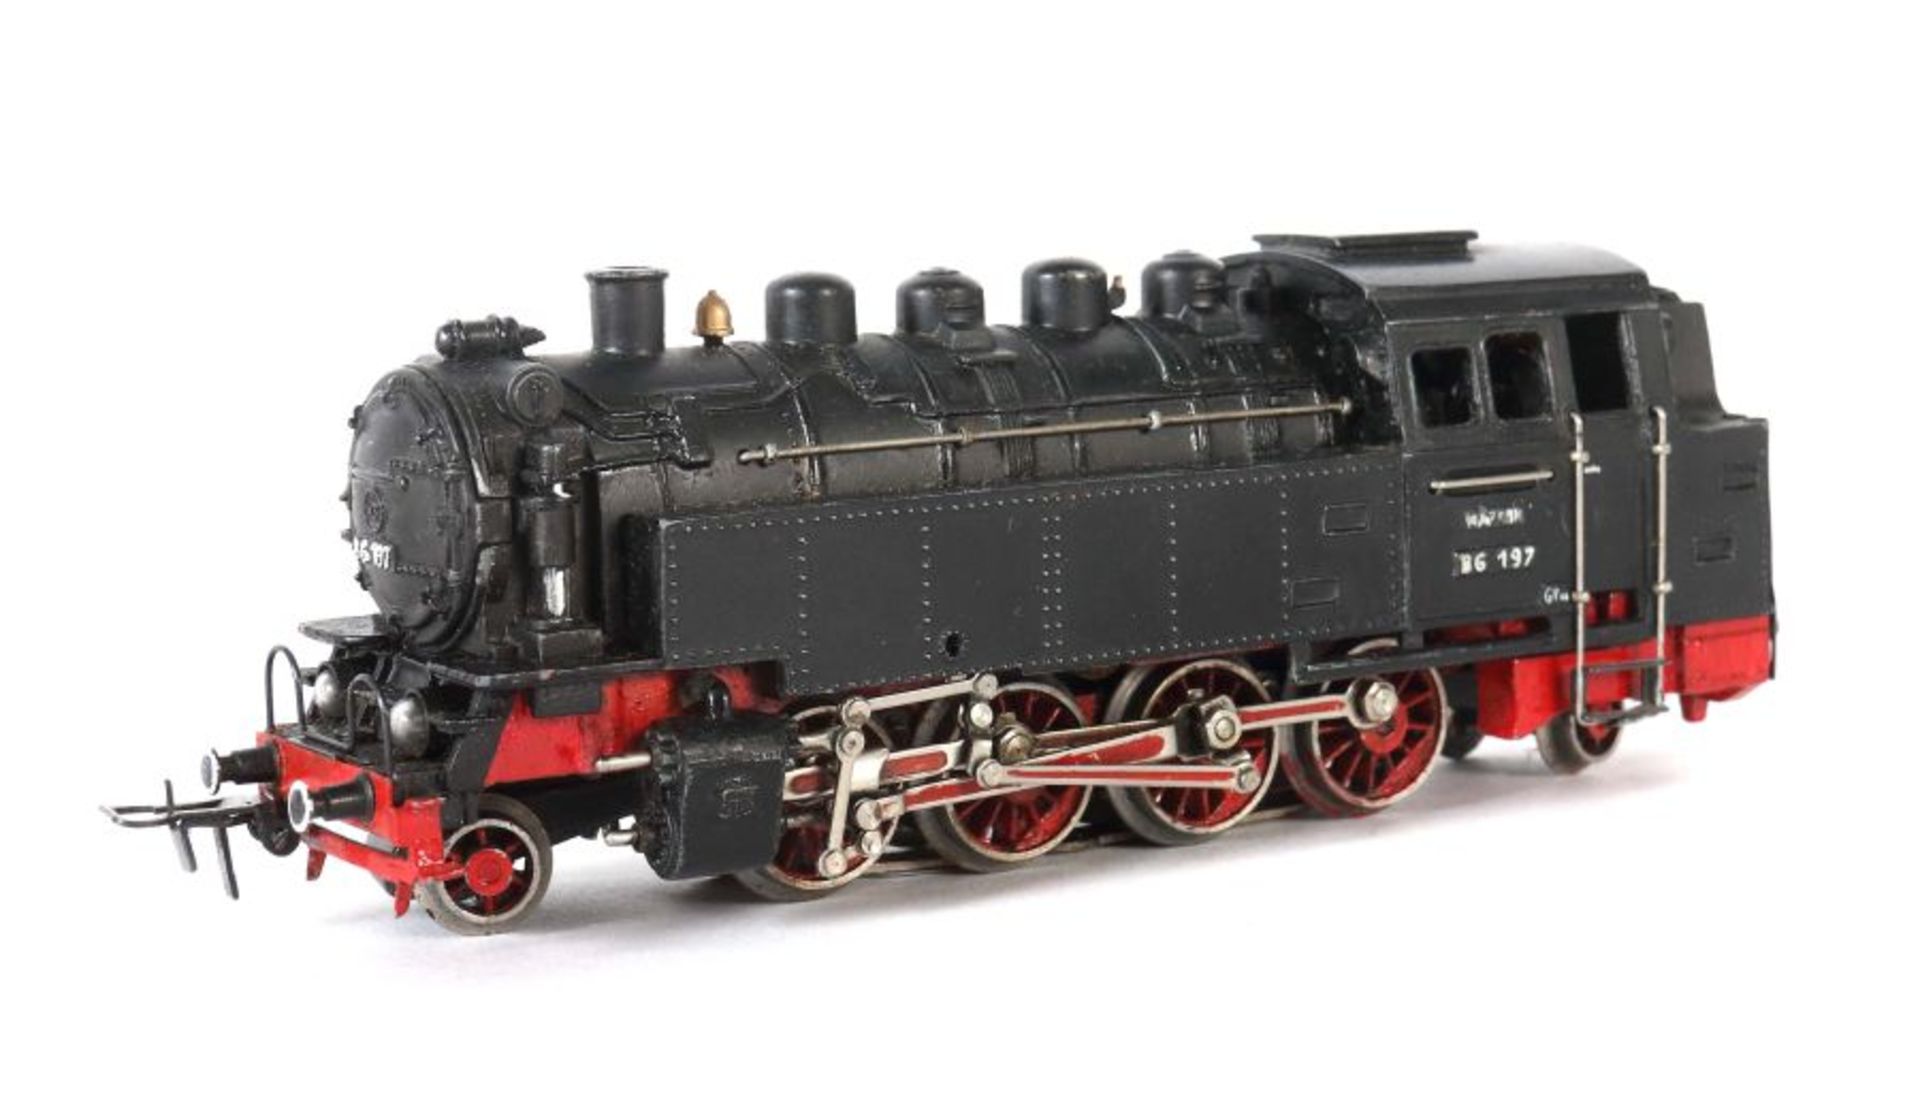 Dampflokomotive Märklin, Spur H0, TT 800, BZ 1952-1956, Guss in schwarz, Aufschrift "TT 800" und "